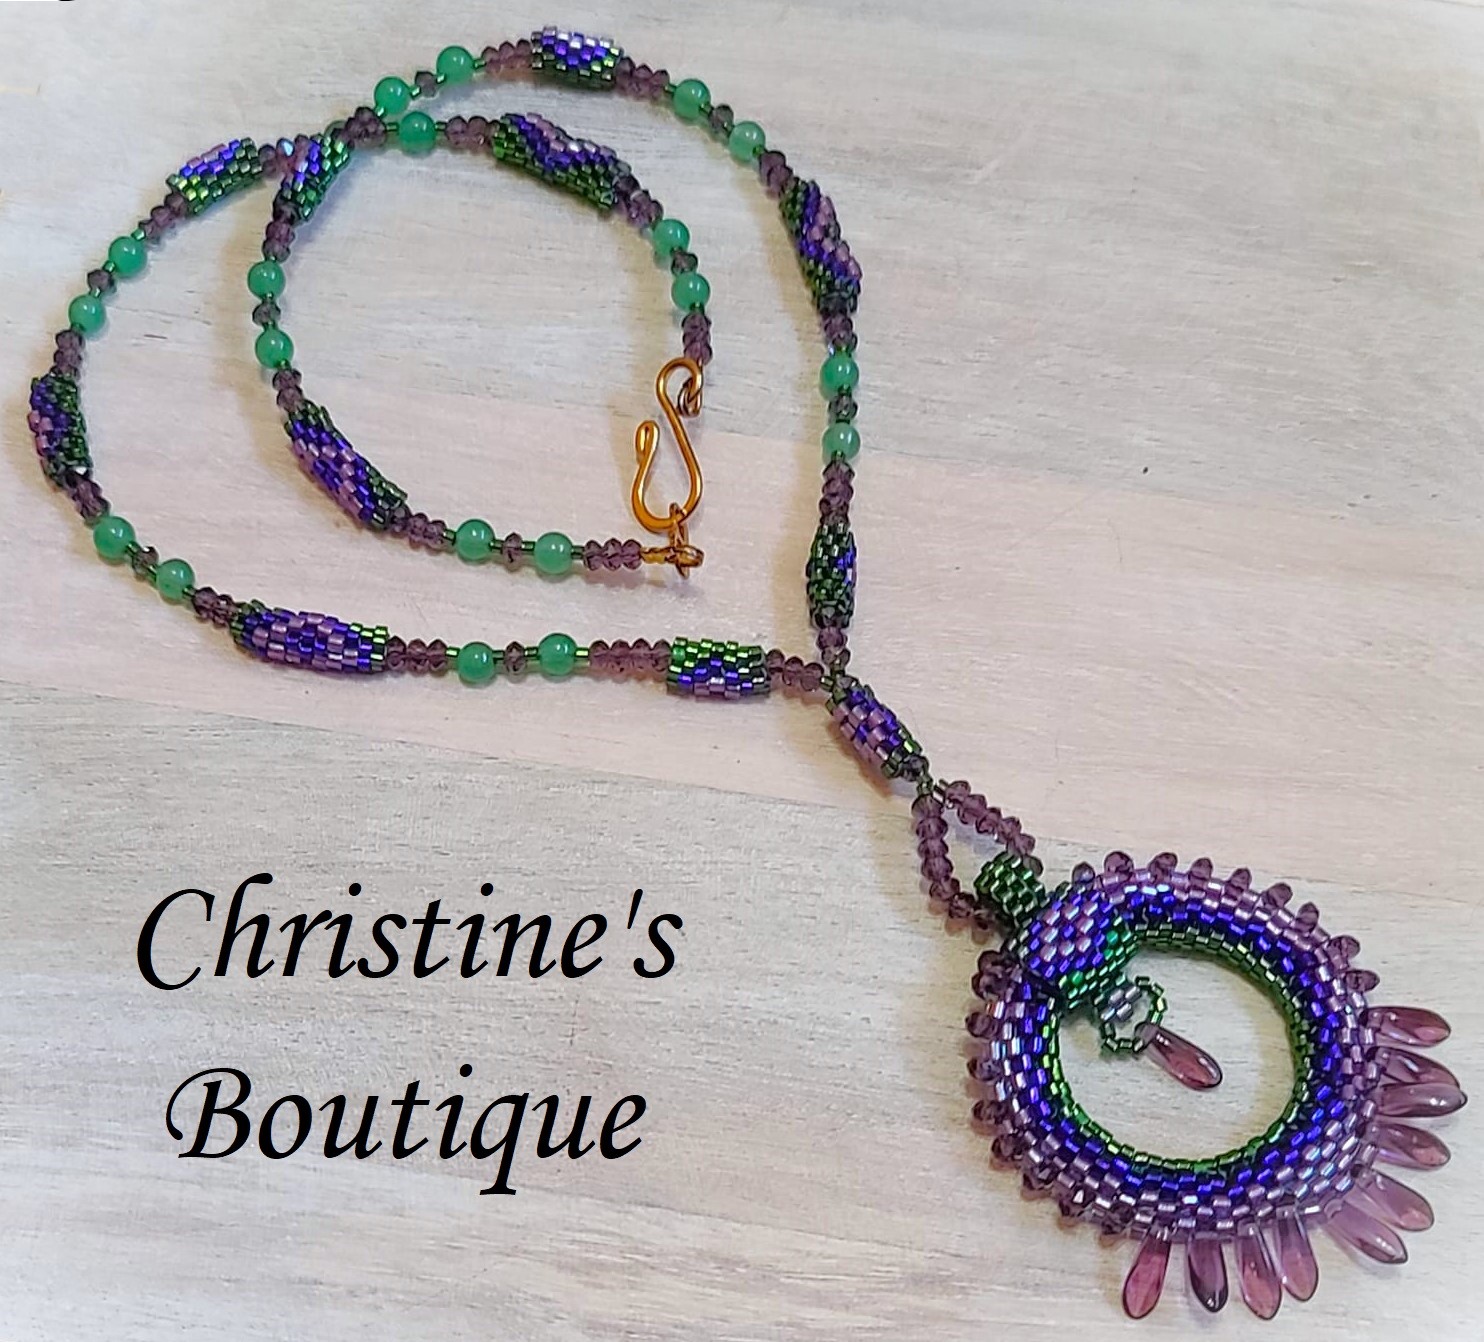 Beaded pendant necklace with fringe, circle pendant, jade gems